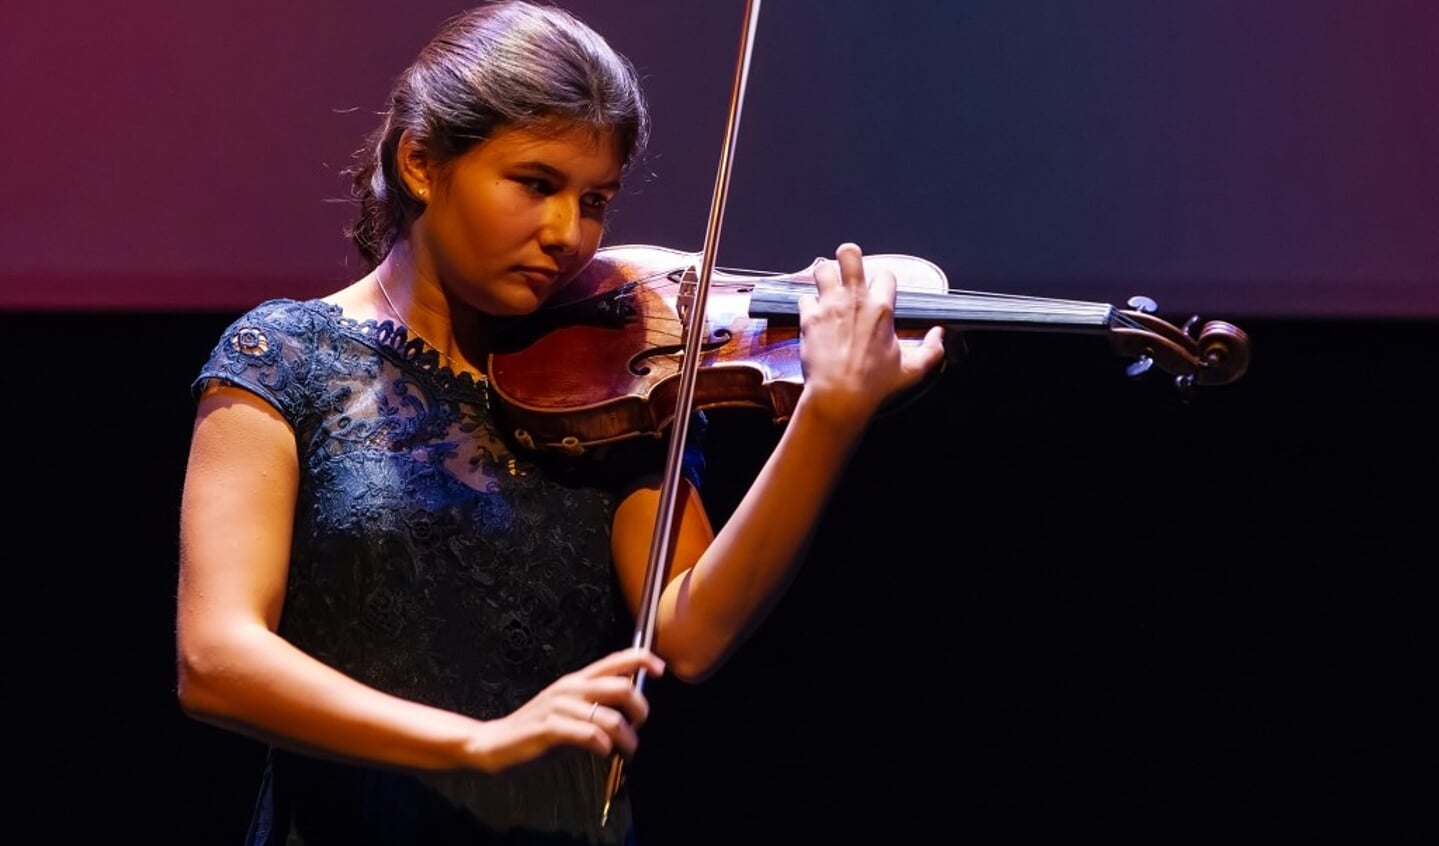 Uurtje Klassiek – Iris van Nuland, viool